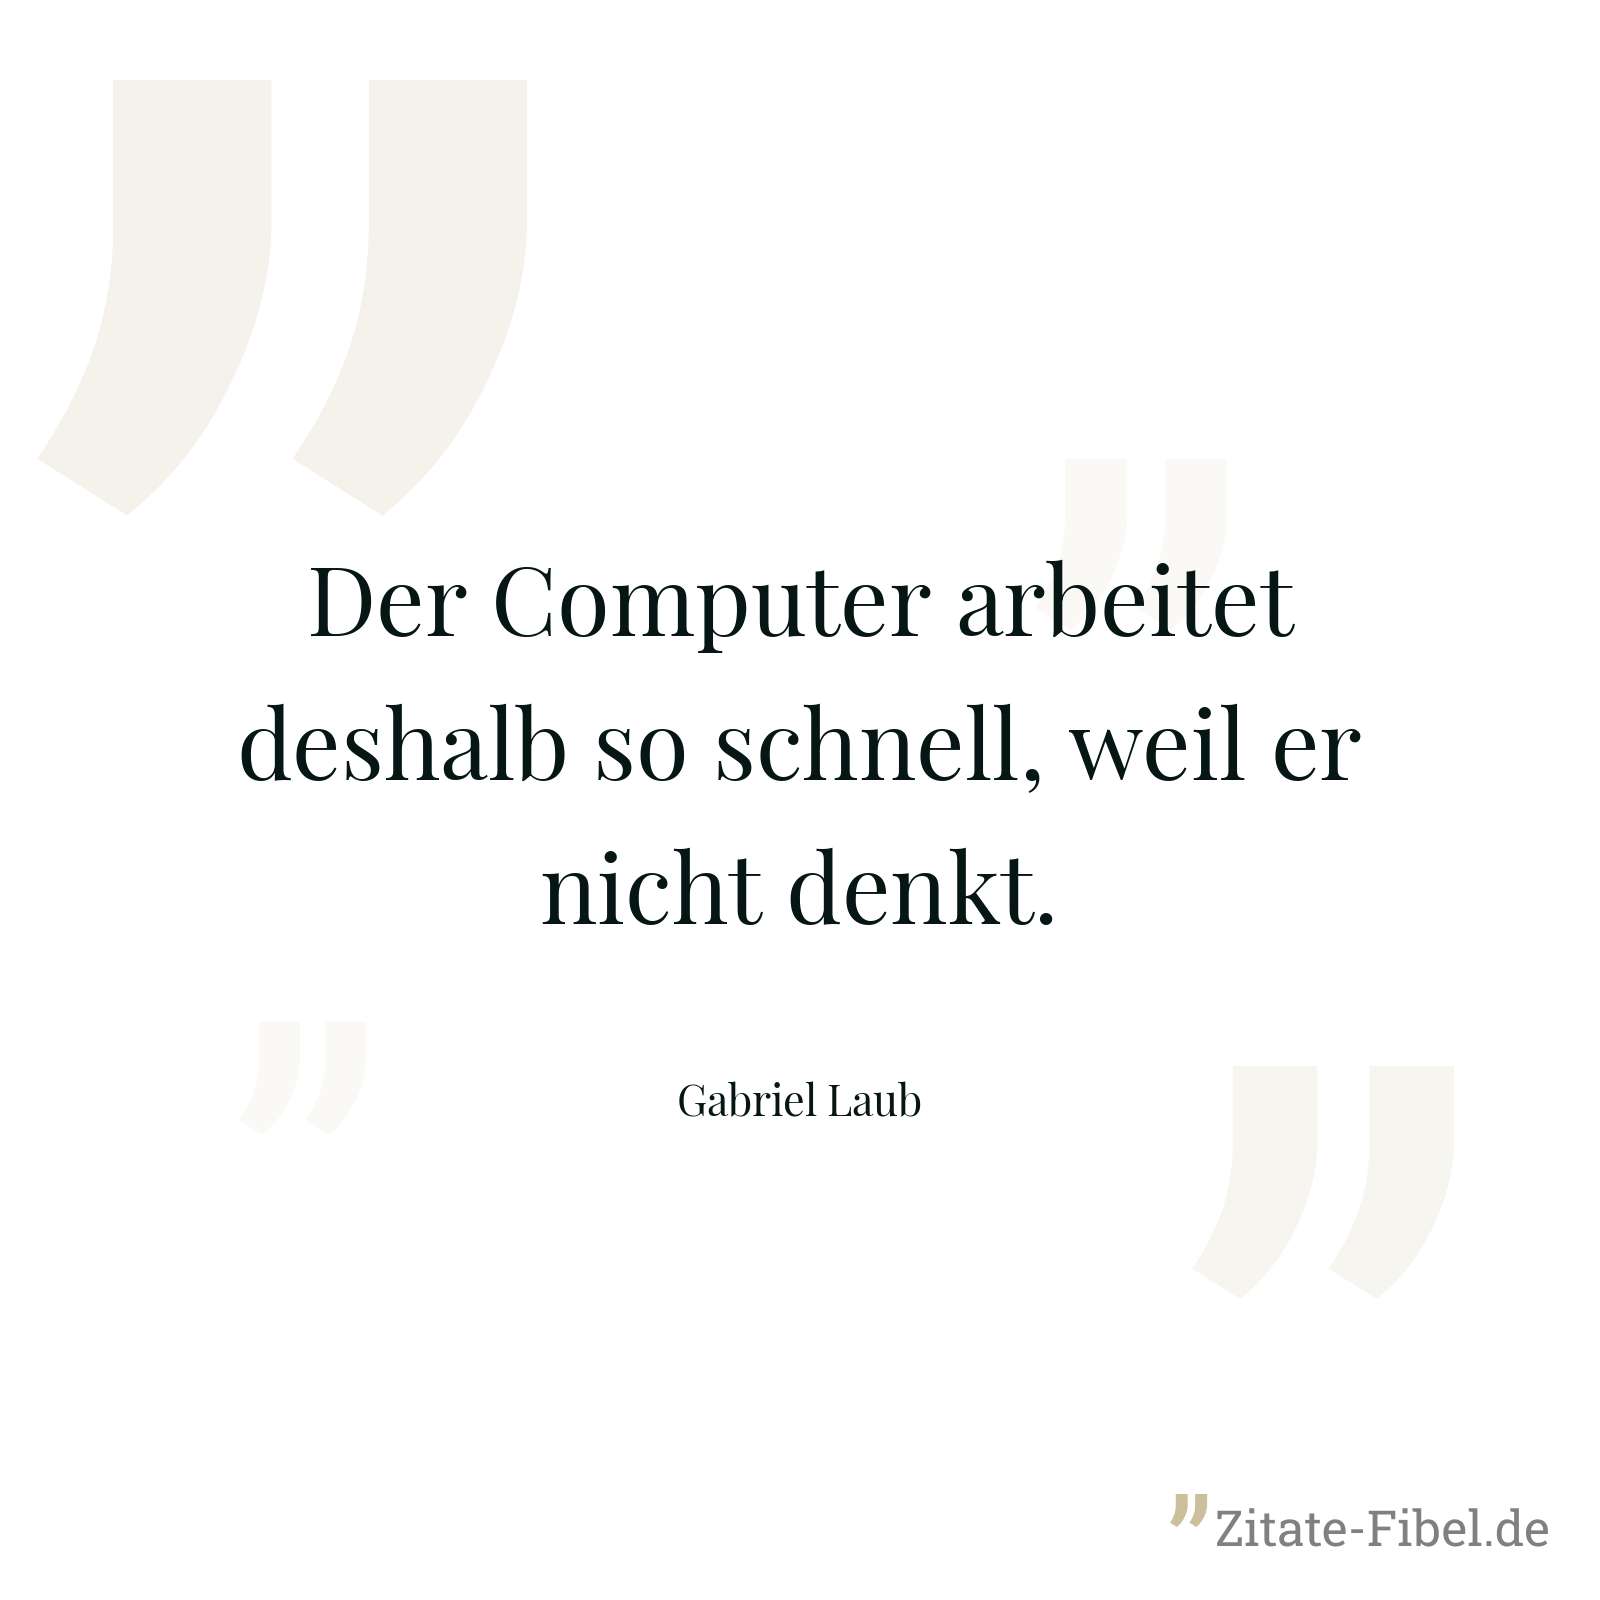 Der Computer arbeitet deshalb so schnell, weil er nicht denkt. - Gabriel Laub